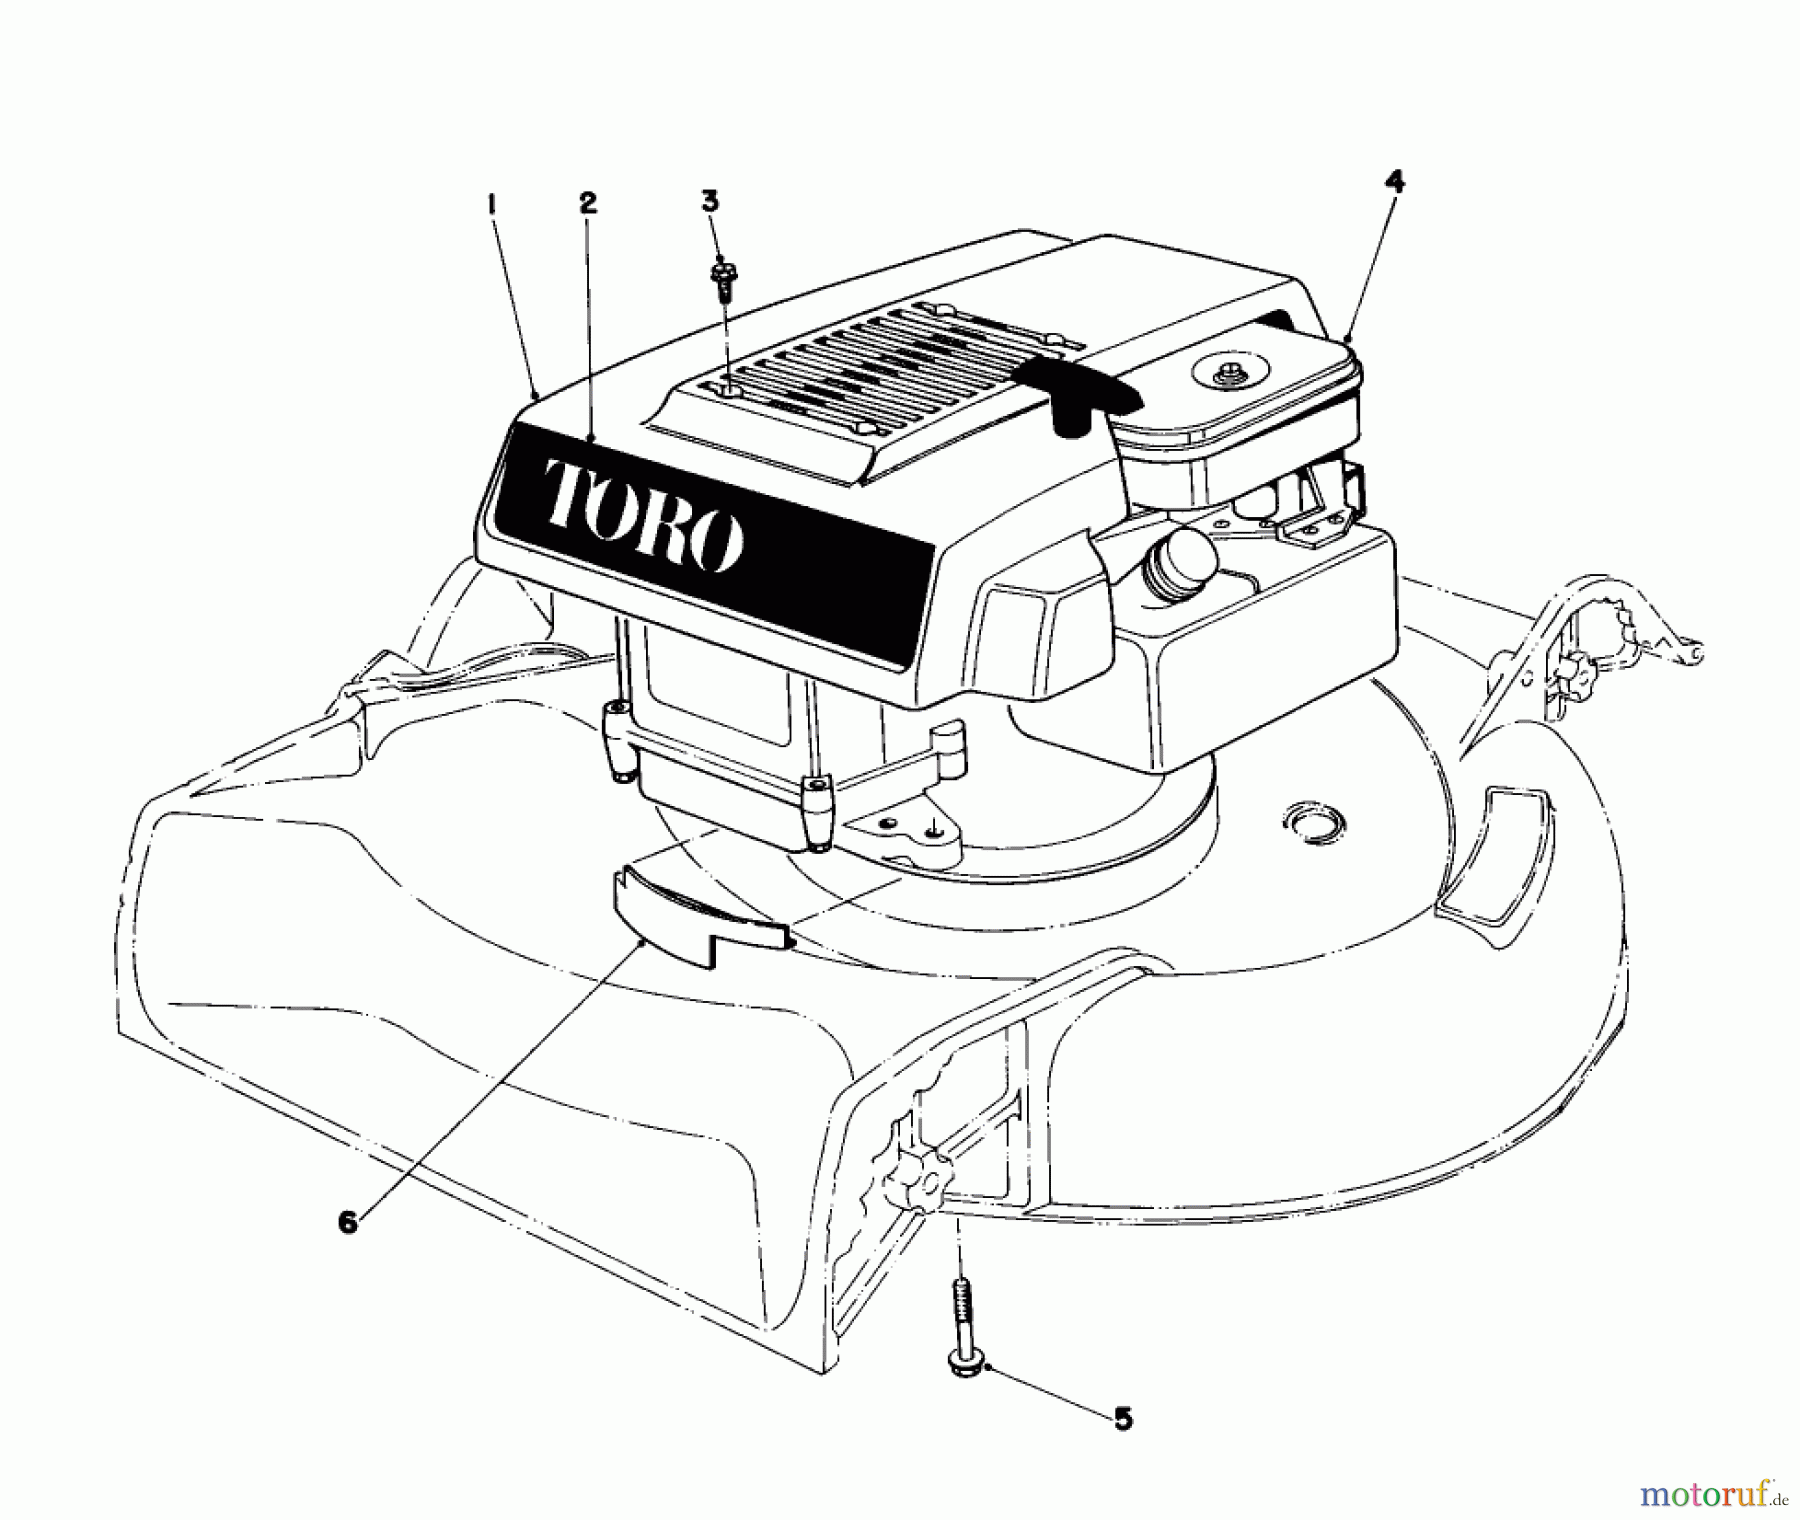  Toro Neu Mowers, Walk-Behind Seite 1 16350 - Toro Lawnmower, 1979 (9000001-9999999) ENGINE ASSEMBLY